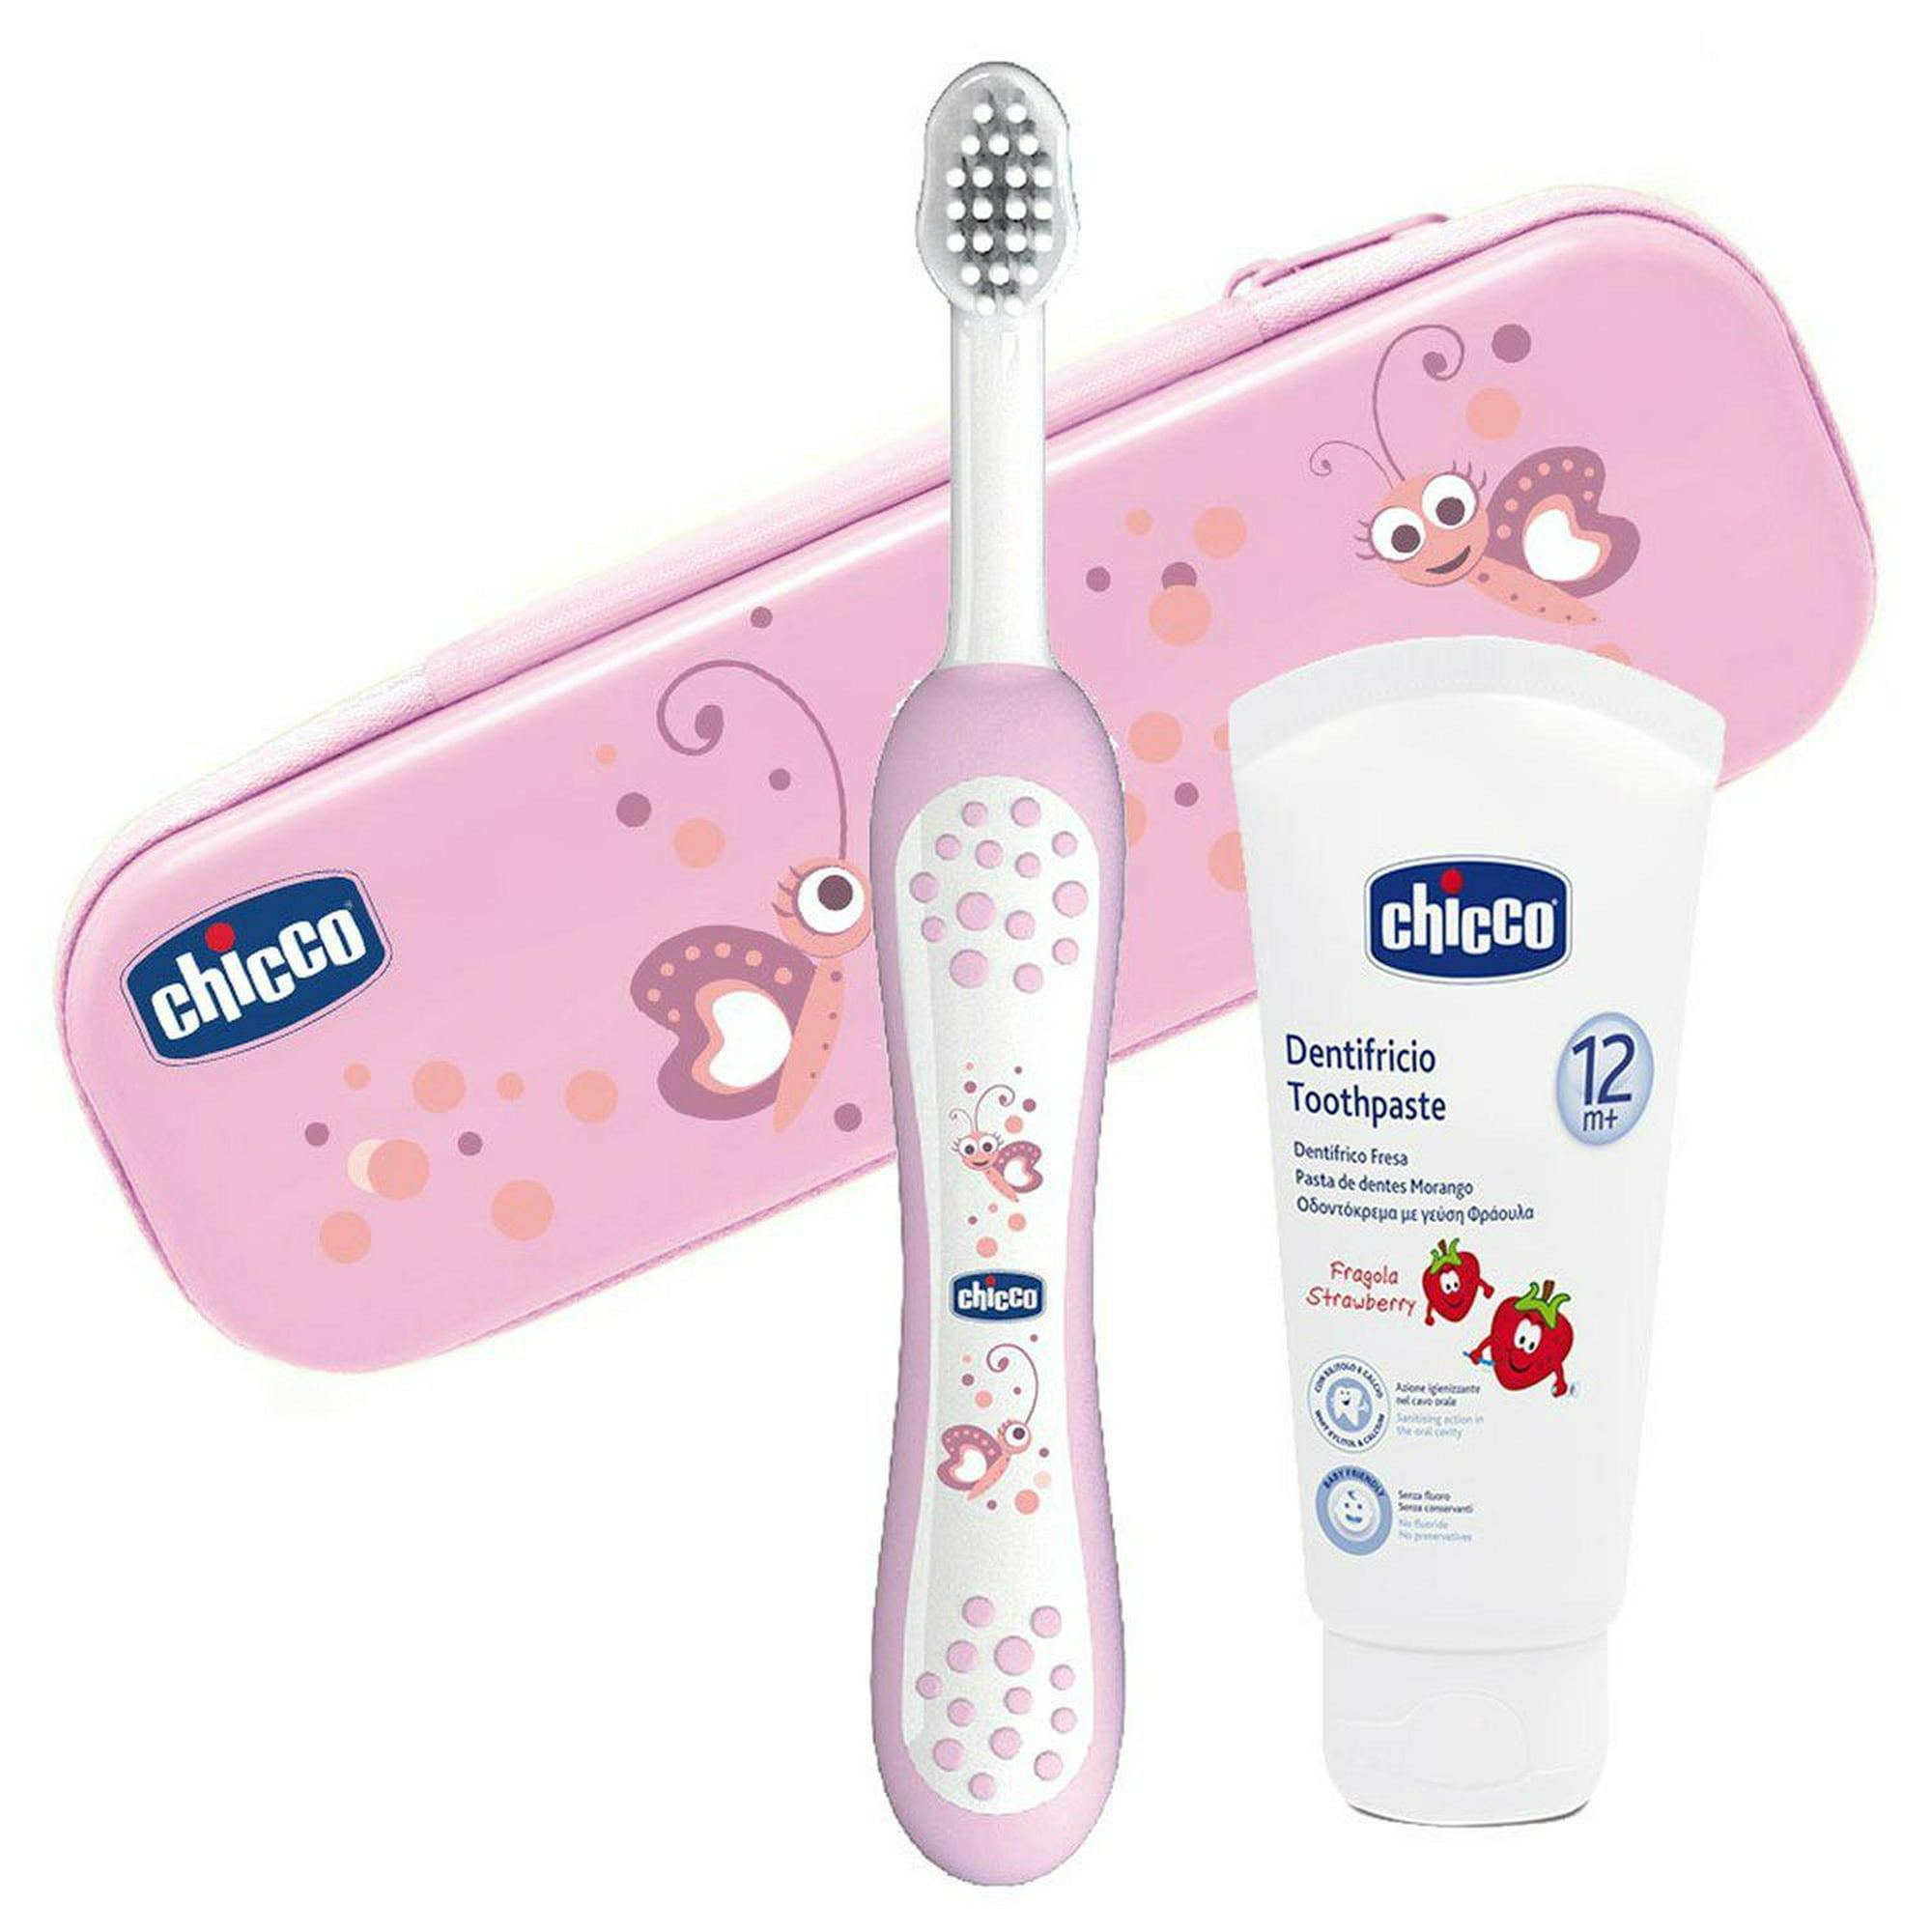 Chicco Set de Cepillo y pasta de dientes rosa para niños Chicco Rosa